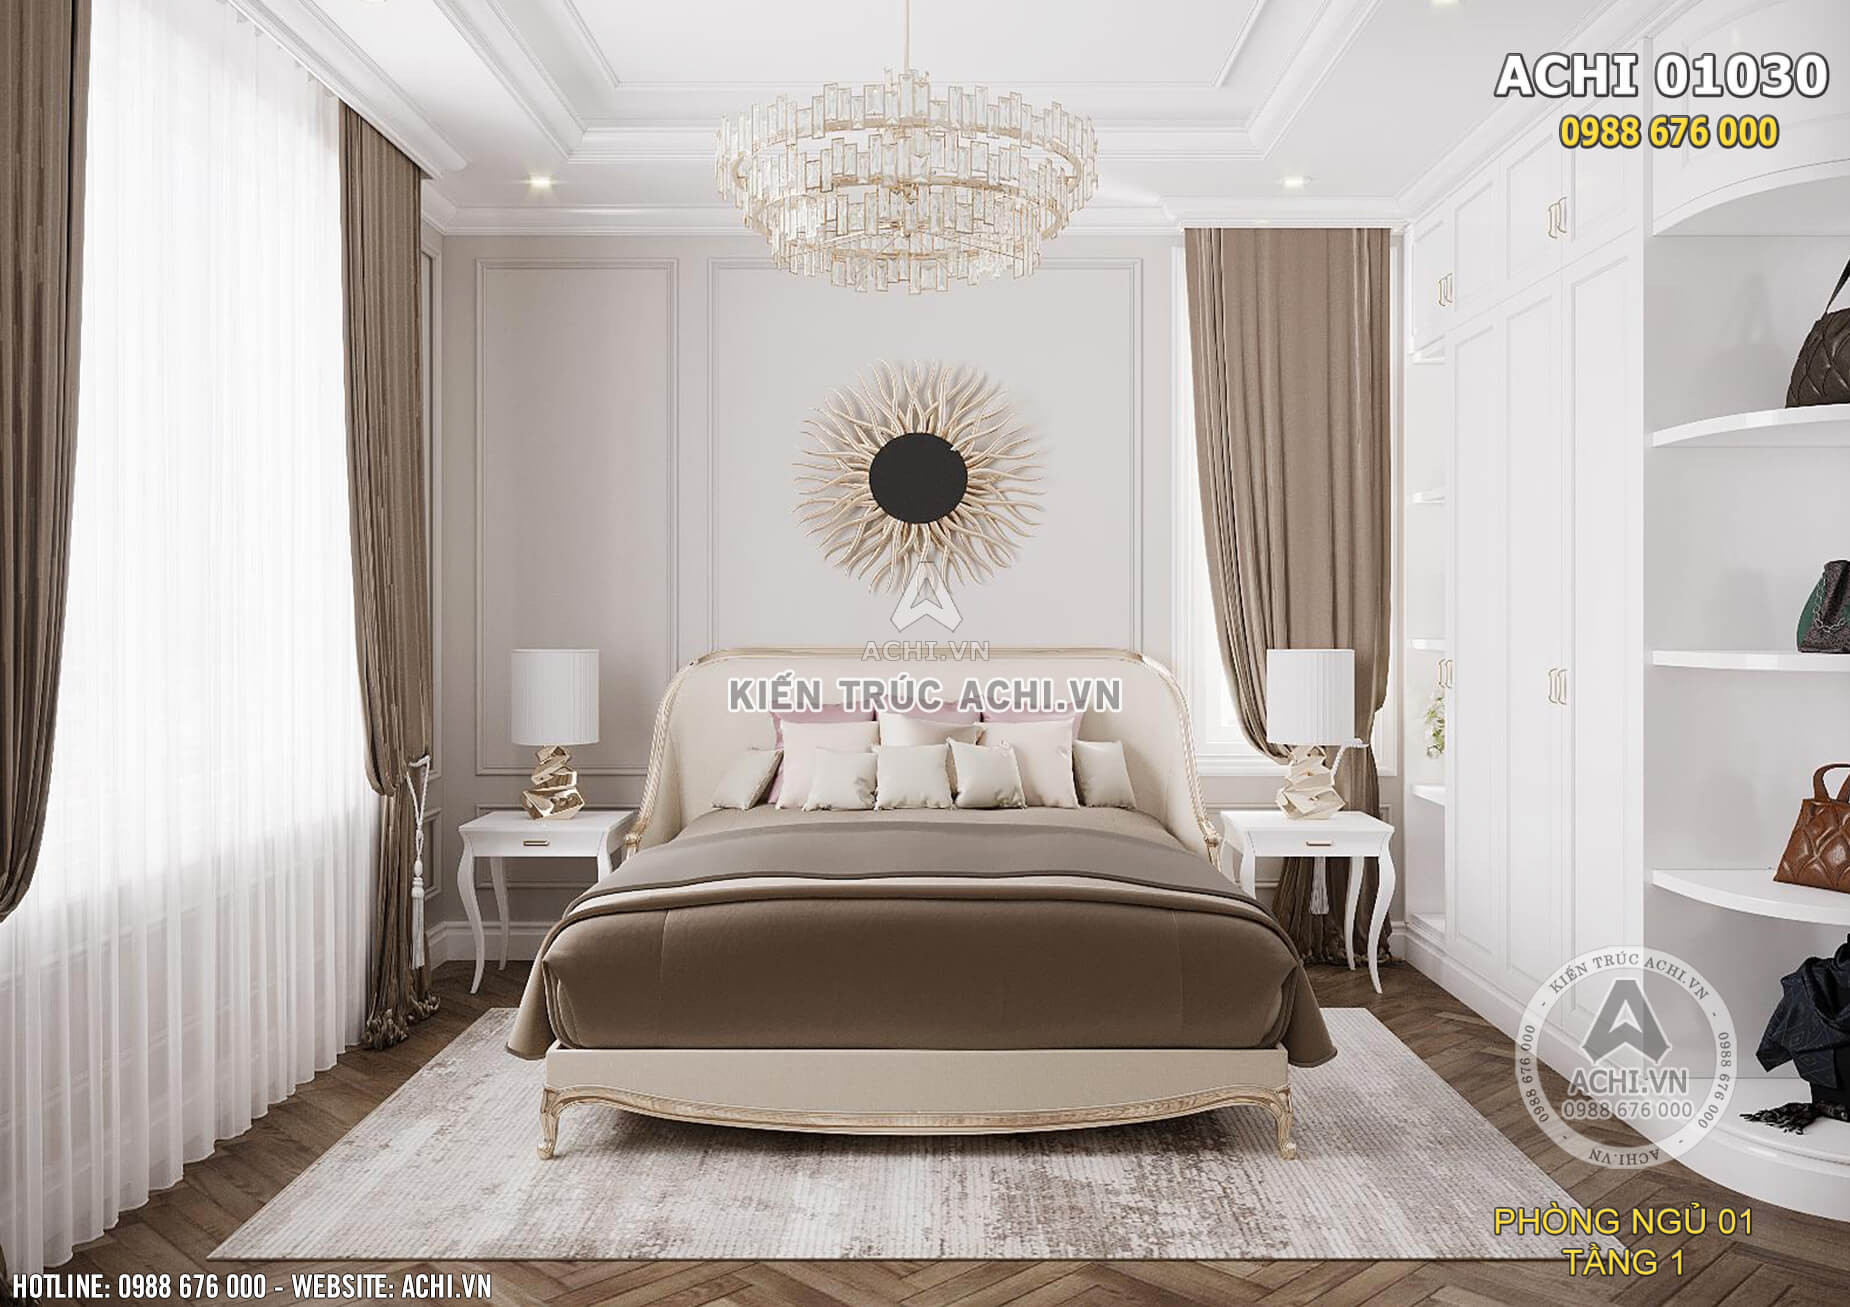 Gam màu trầm của đồ nội thất kết hợp gam màu trắng sáng của sơn chủ đạo chủ không gian nội thất mang lại vẻ đẹp tương phản lớn